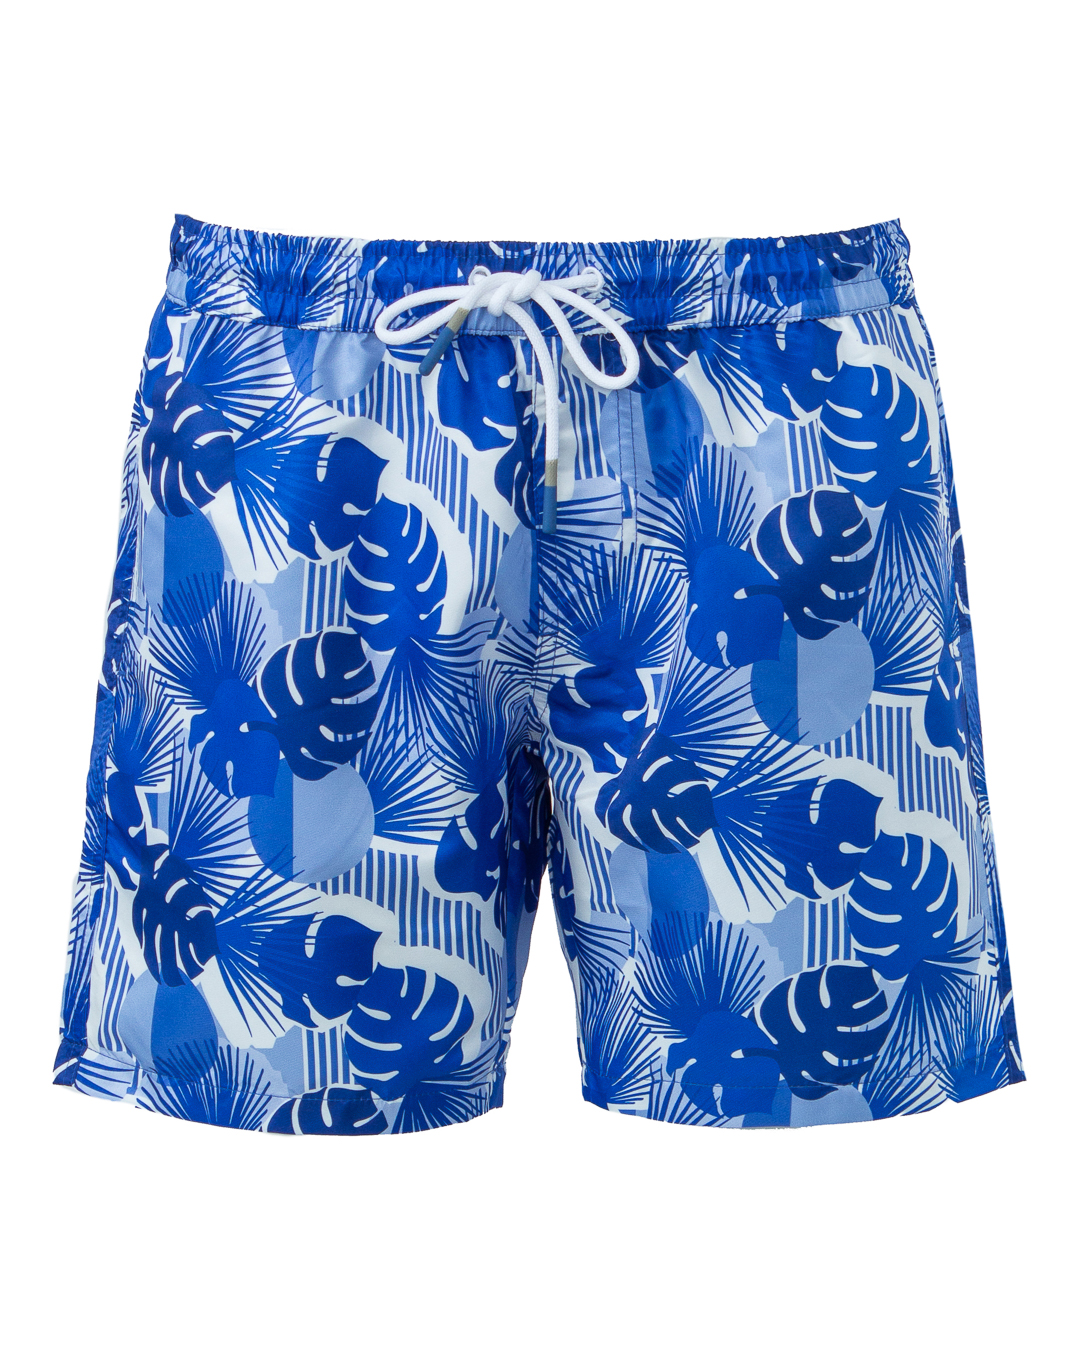 шорты для плавания Harmont & Blaine YRH054 синий+принт xl, размер xl, цвет синий+принт